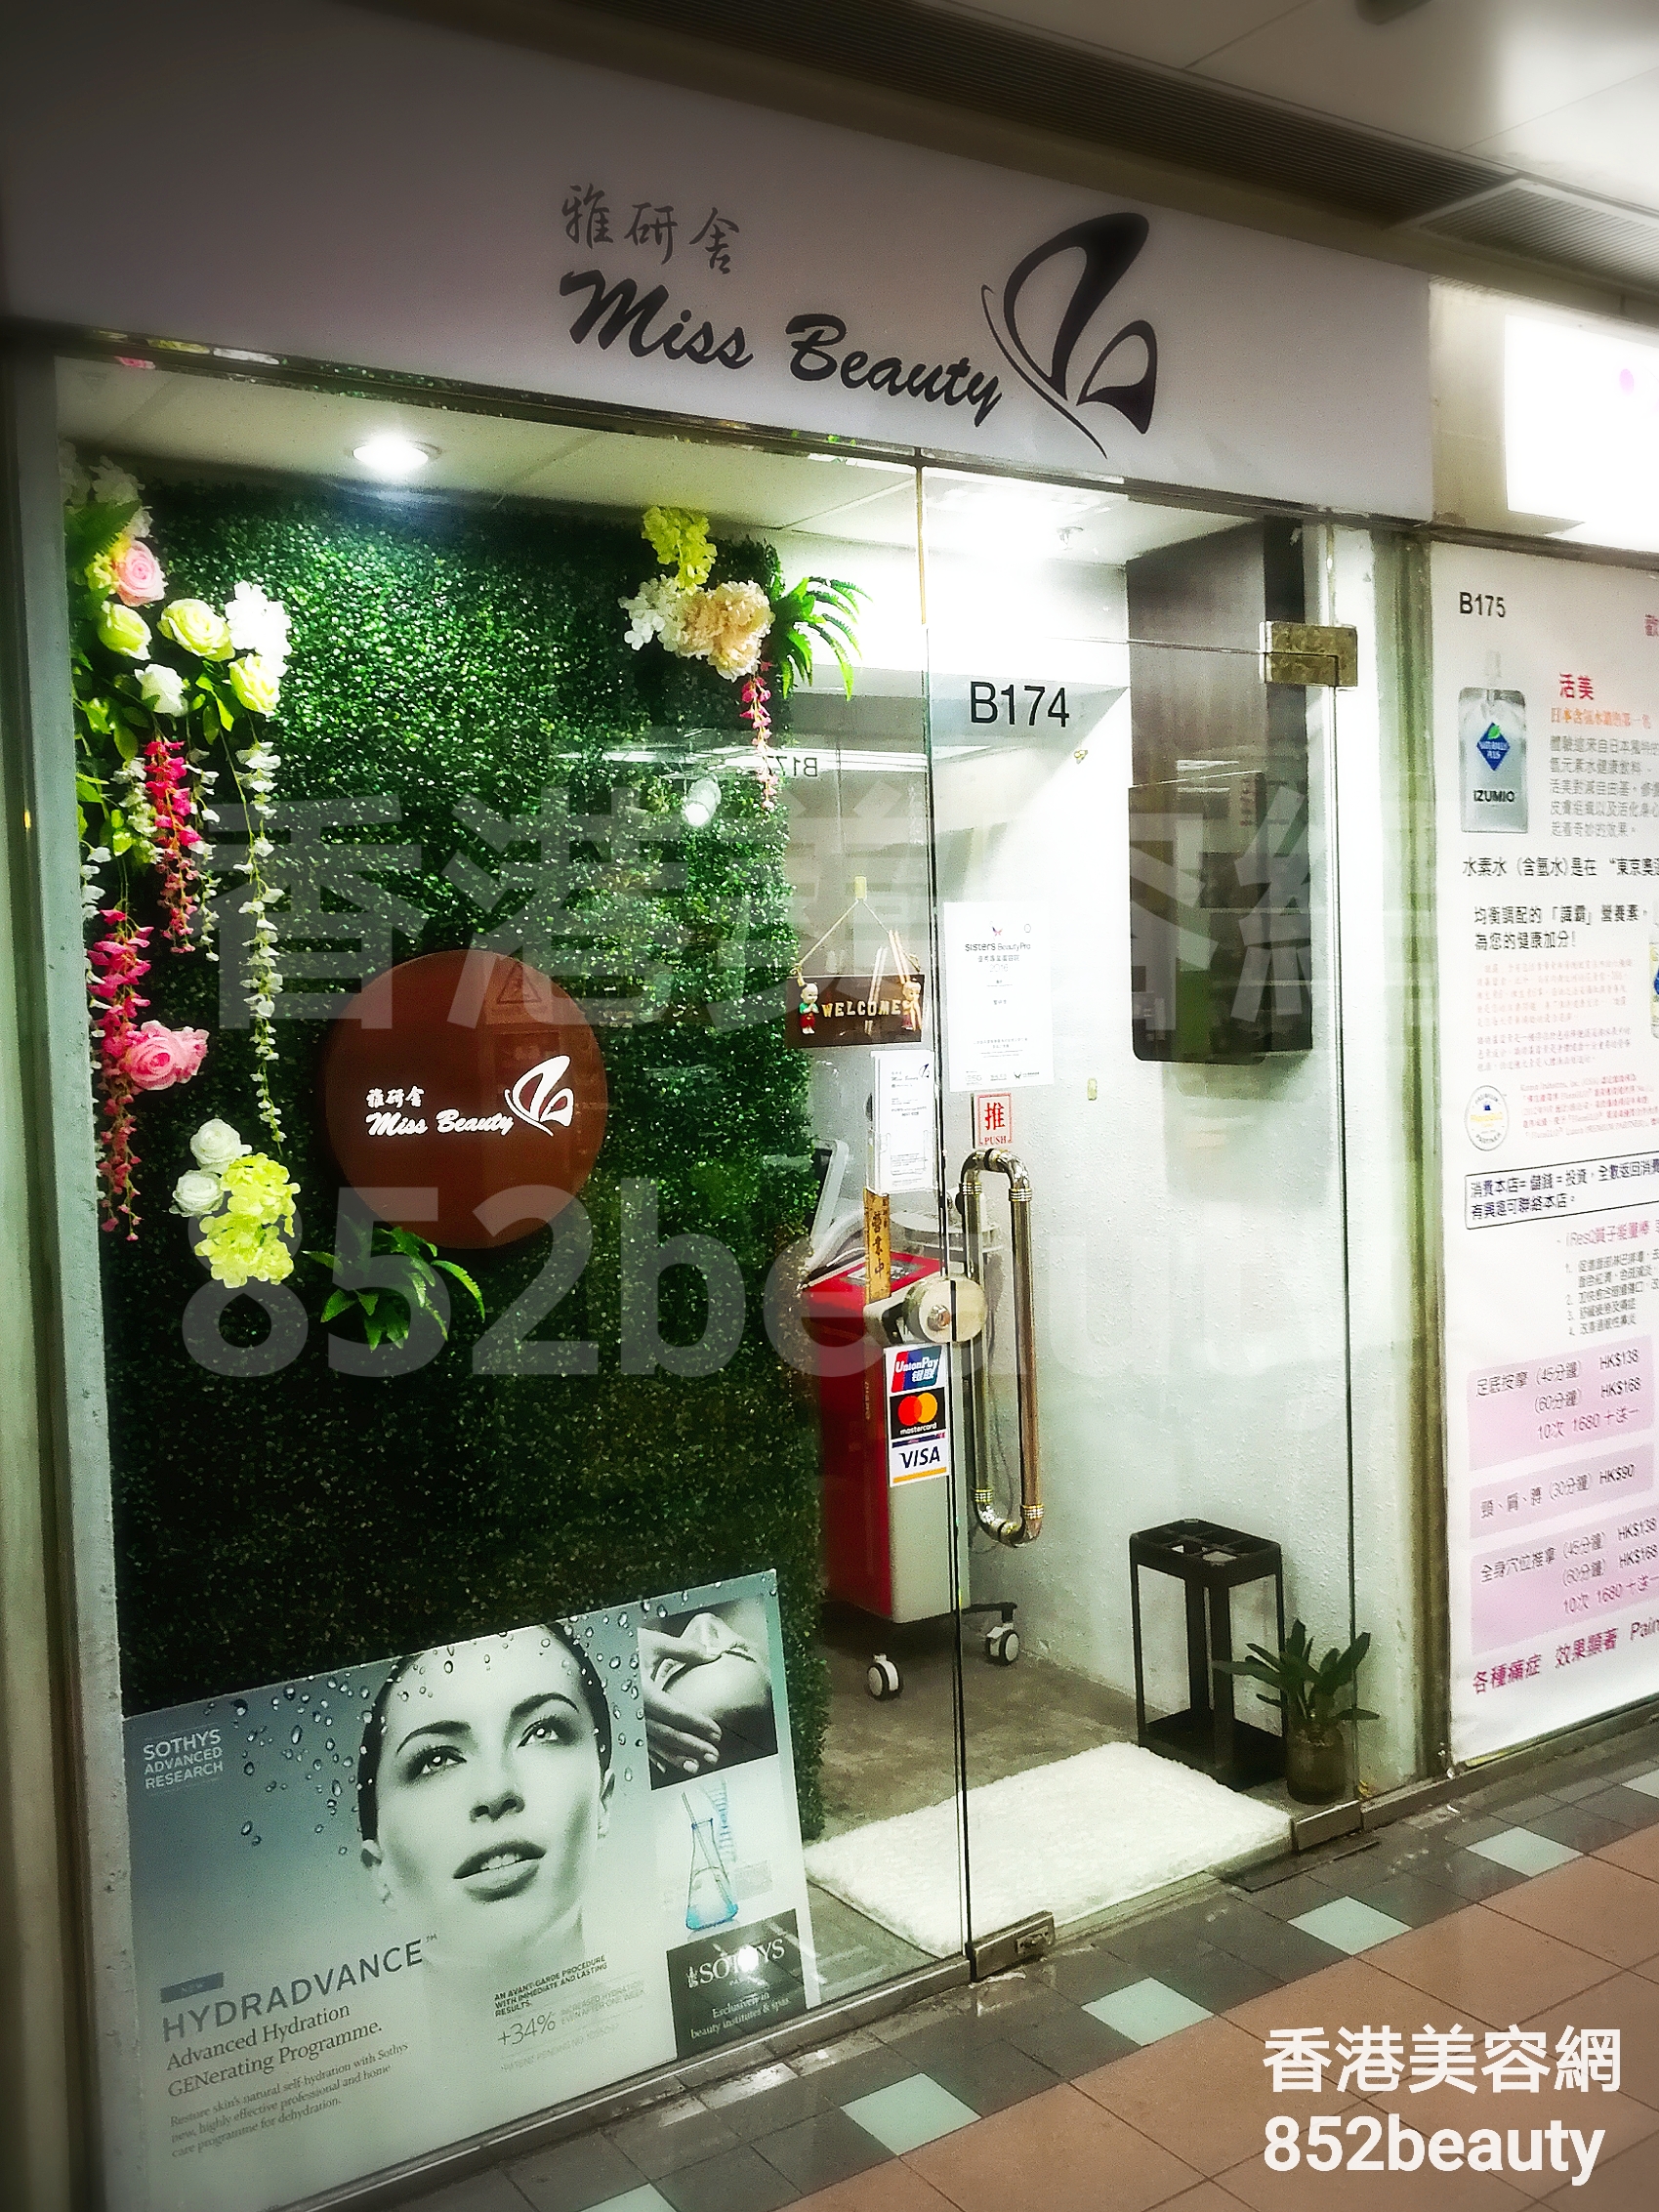 香港美容網 Hong Kong Beauty Salon 美容院 / 美容師: 雅研舍 Miss Beauty